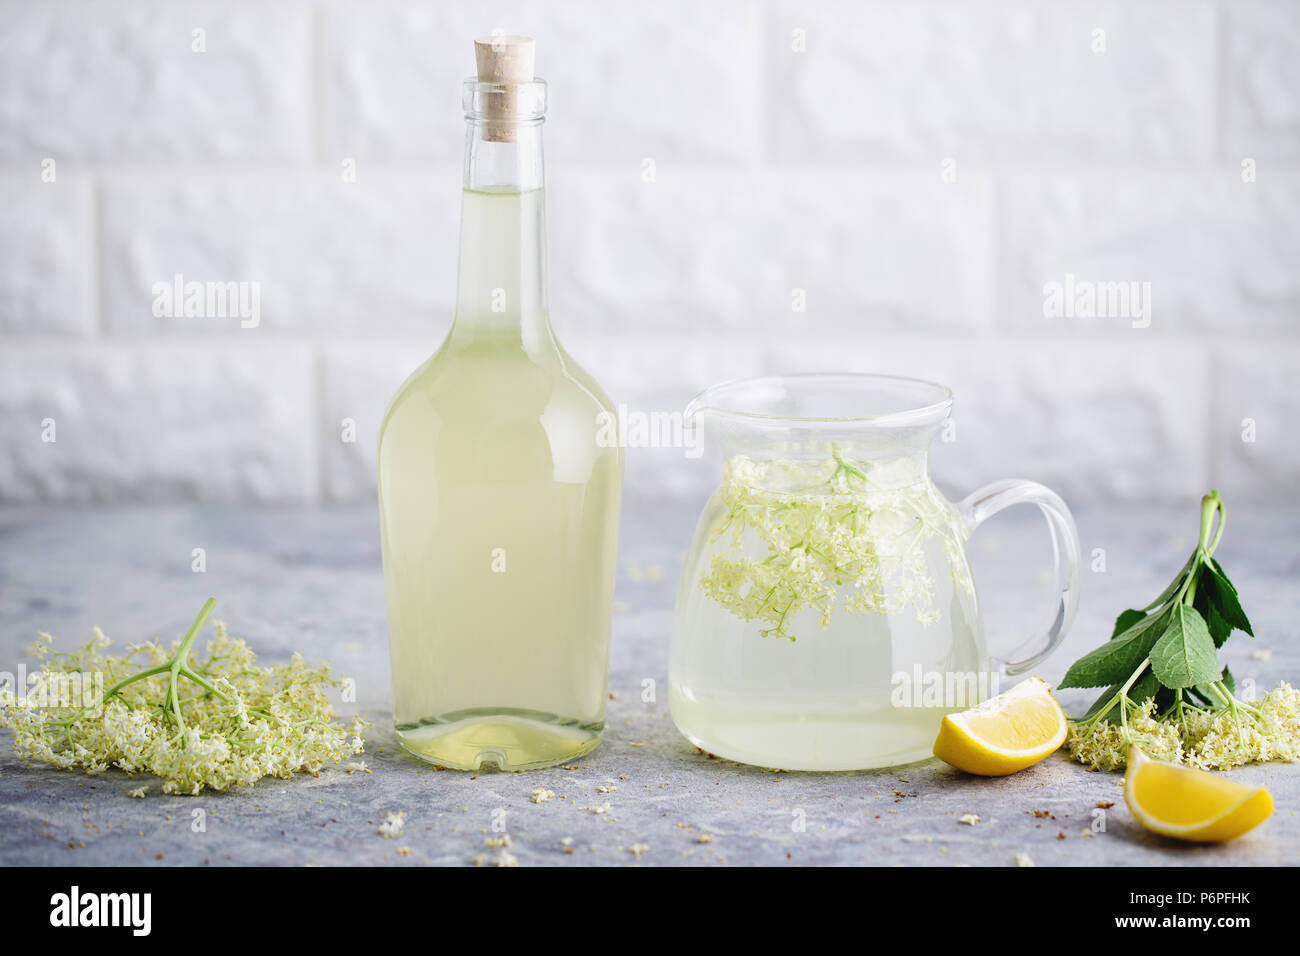 Elderflower limonada casera recién cosechadas con flores de saúco. Las flores son comestibles y se puede utilizar para añadir sabor y aroma a ambas bebidas y des Foto de stock